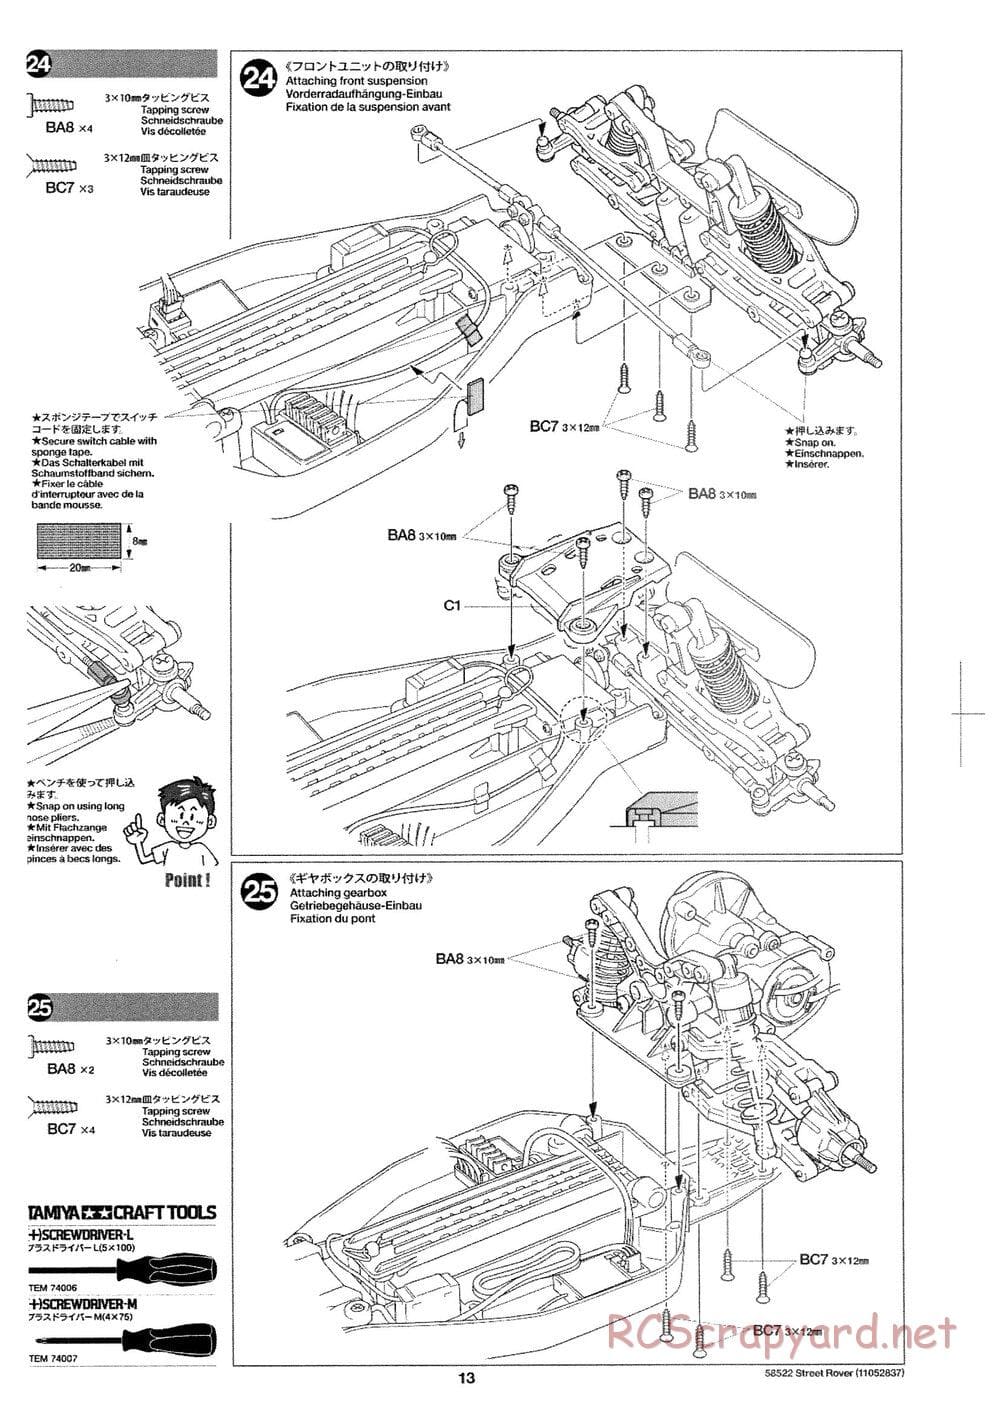 Tamiya - Street Rover Chassis - Manual - Page 14